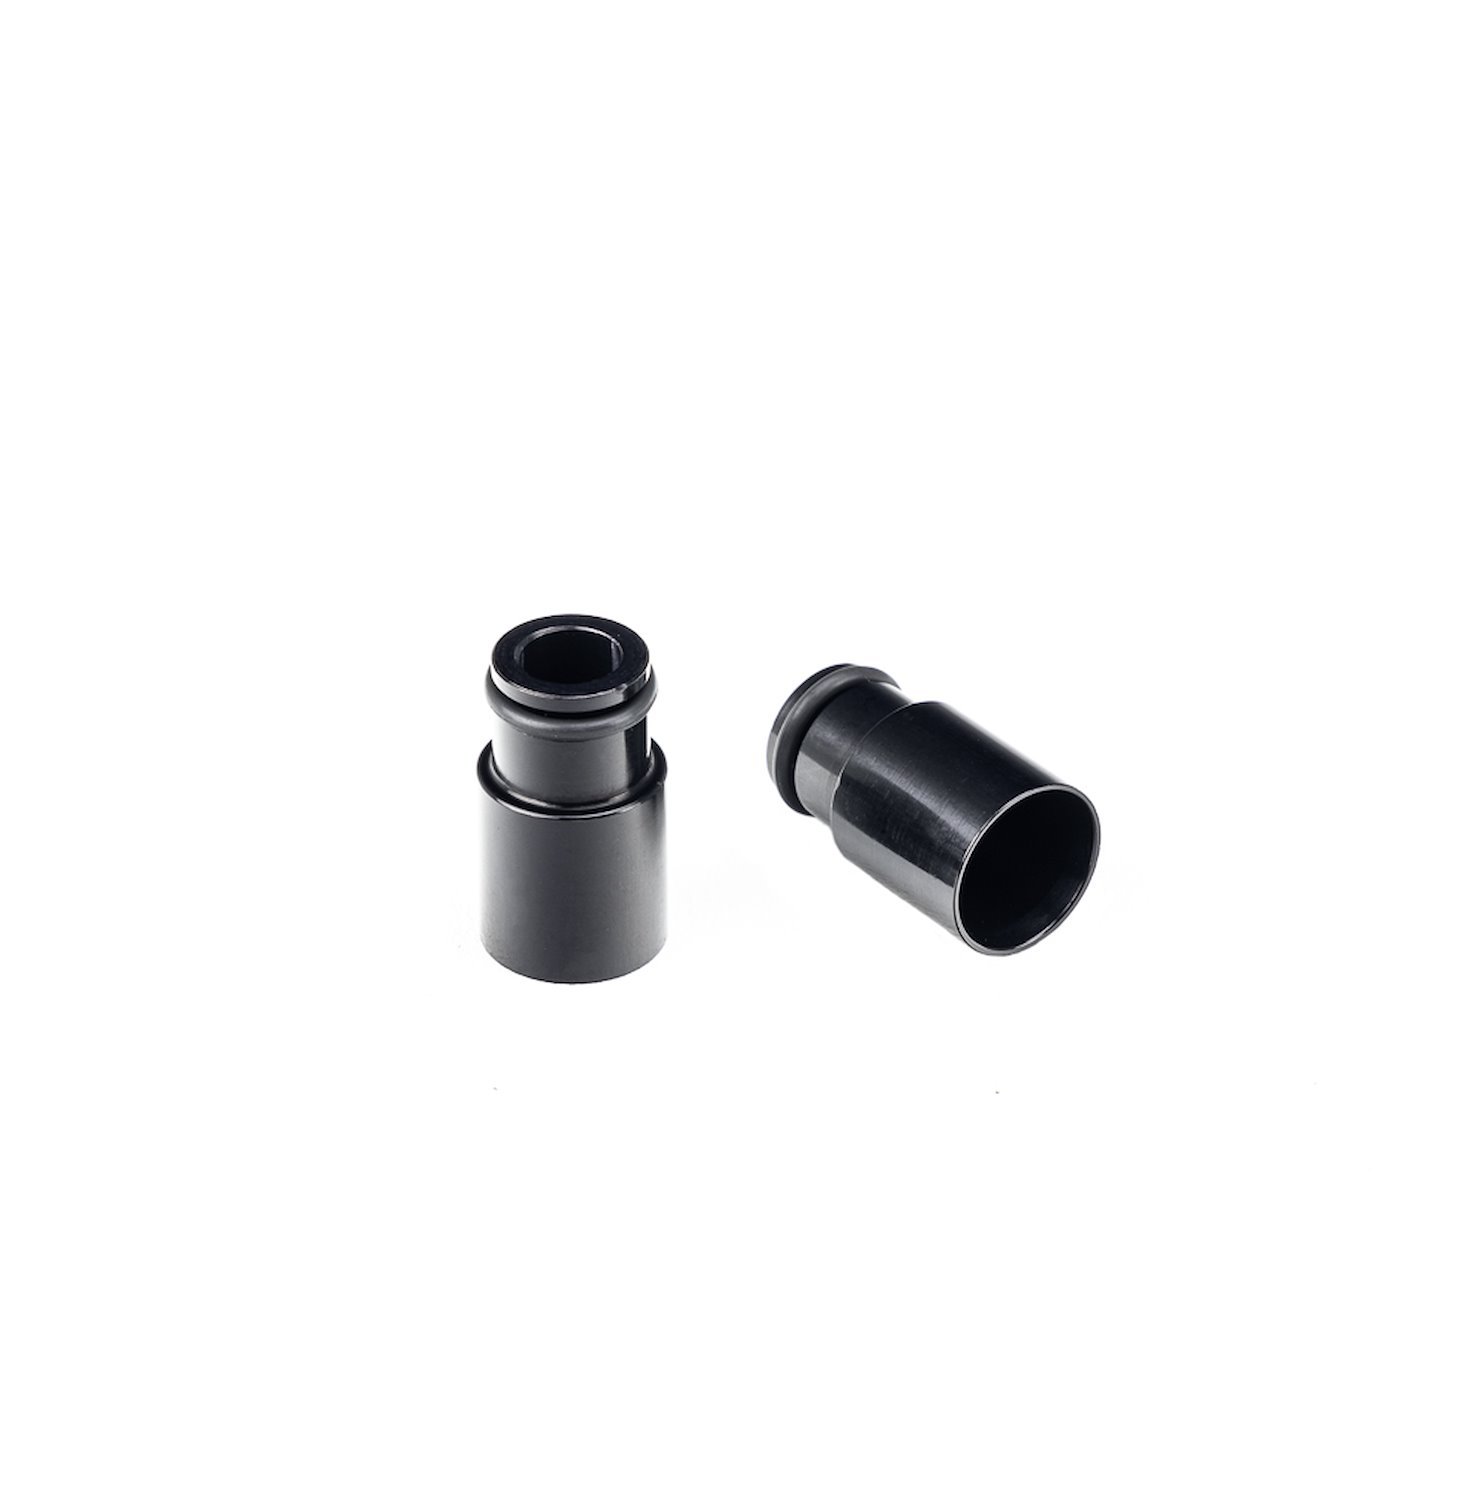 34.48.14B V2 Fuel Injector Adaptor, +14 mm Bottom Adapter, 14 mm Lower O-Ring, Black